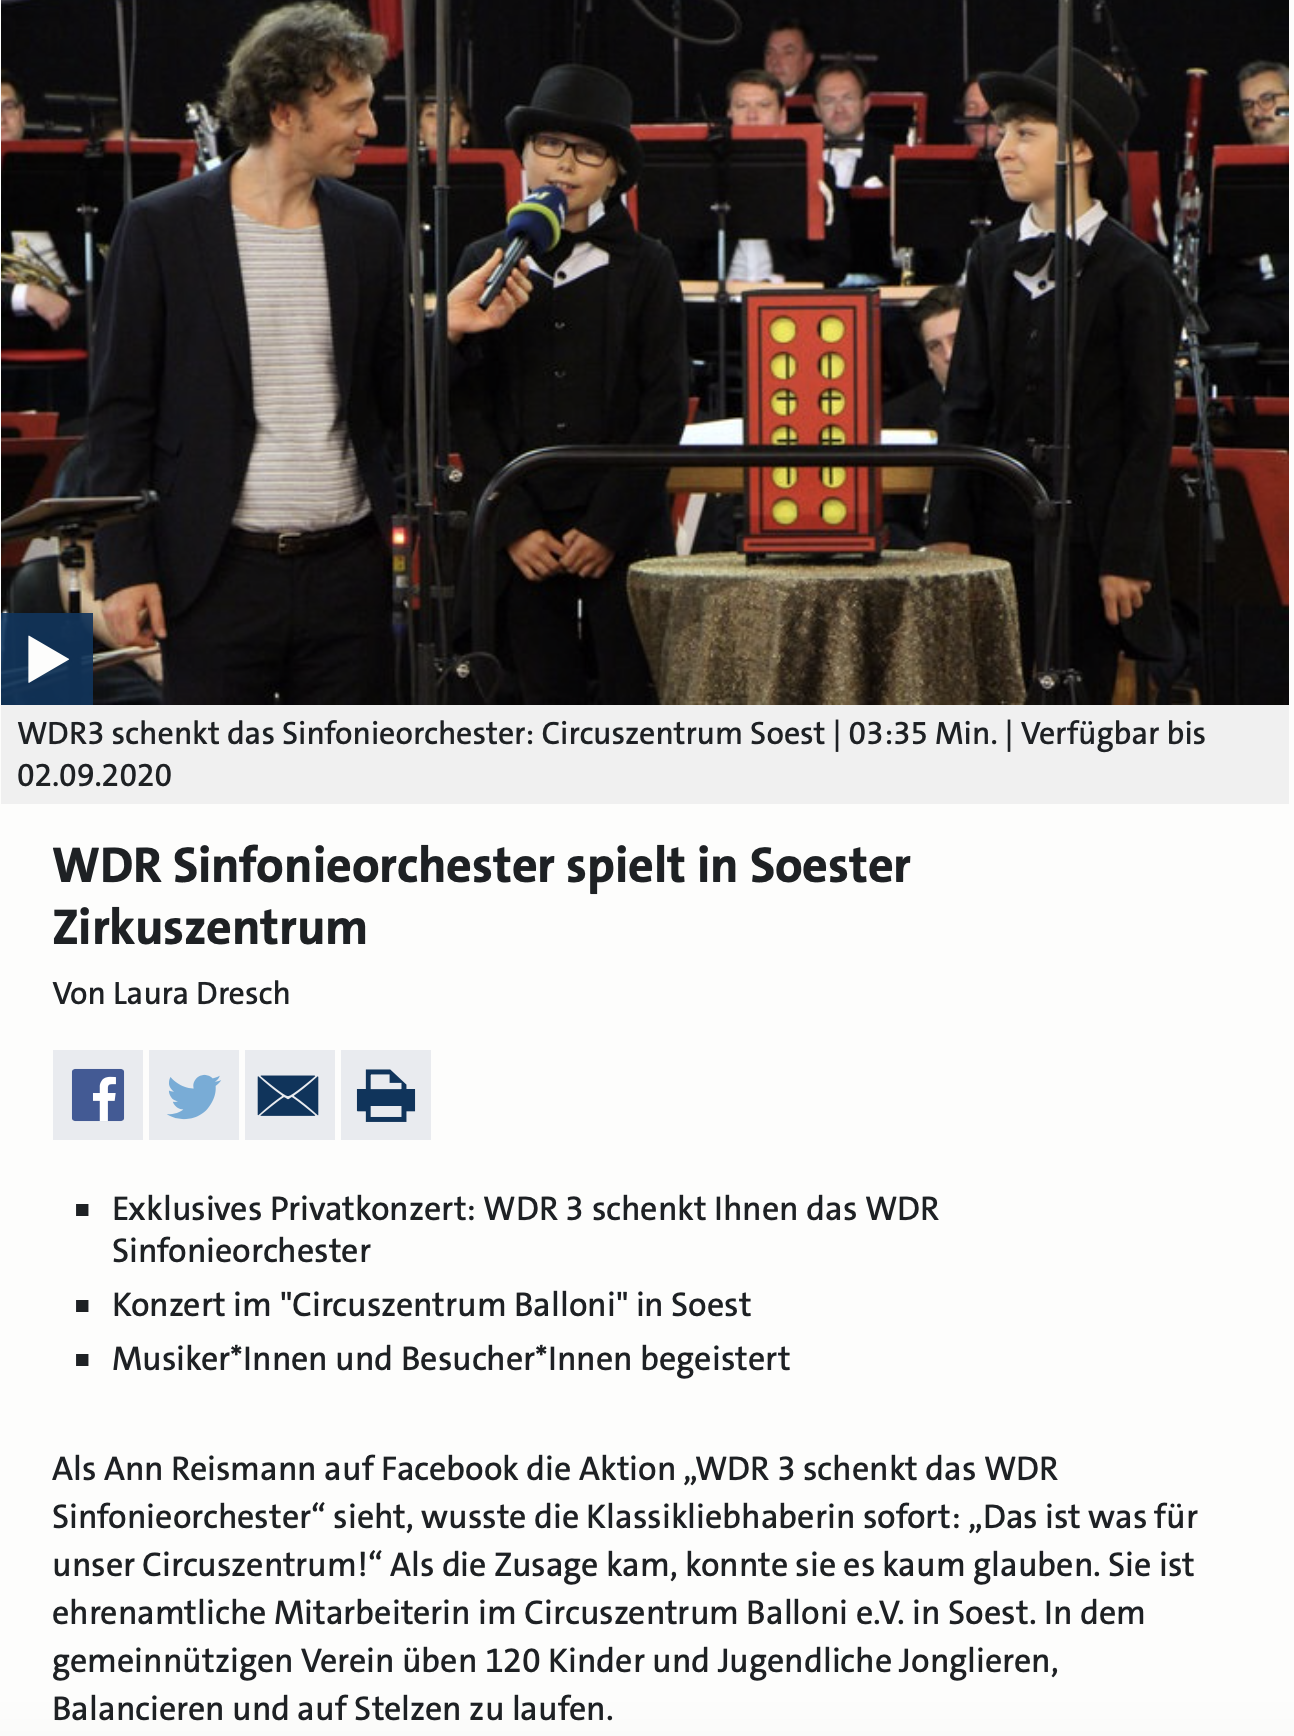 WDR Sinfonieorchester im Circuszentrum